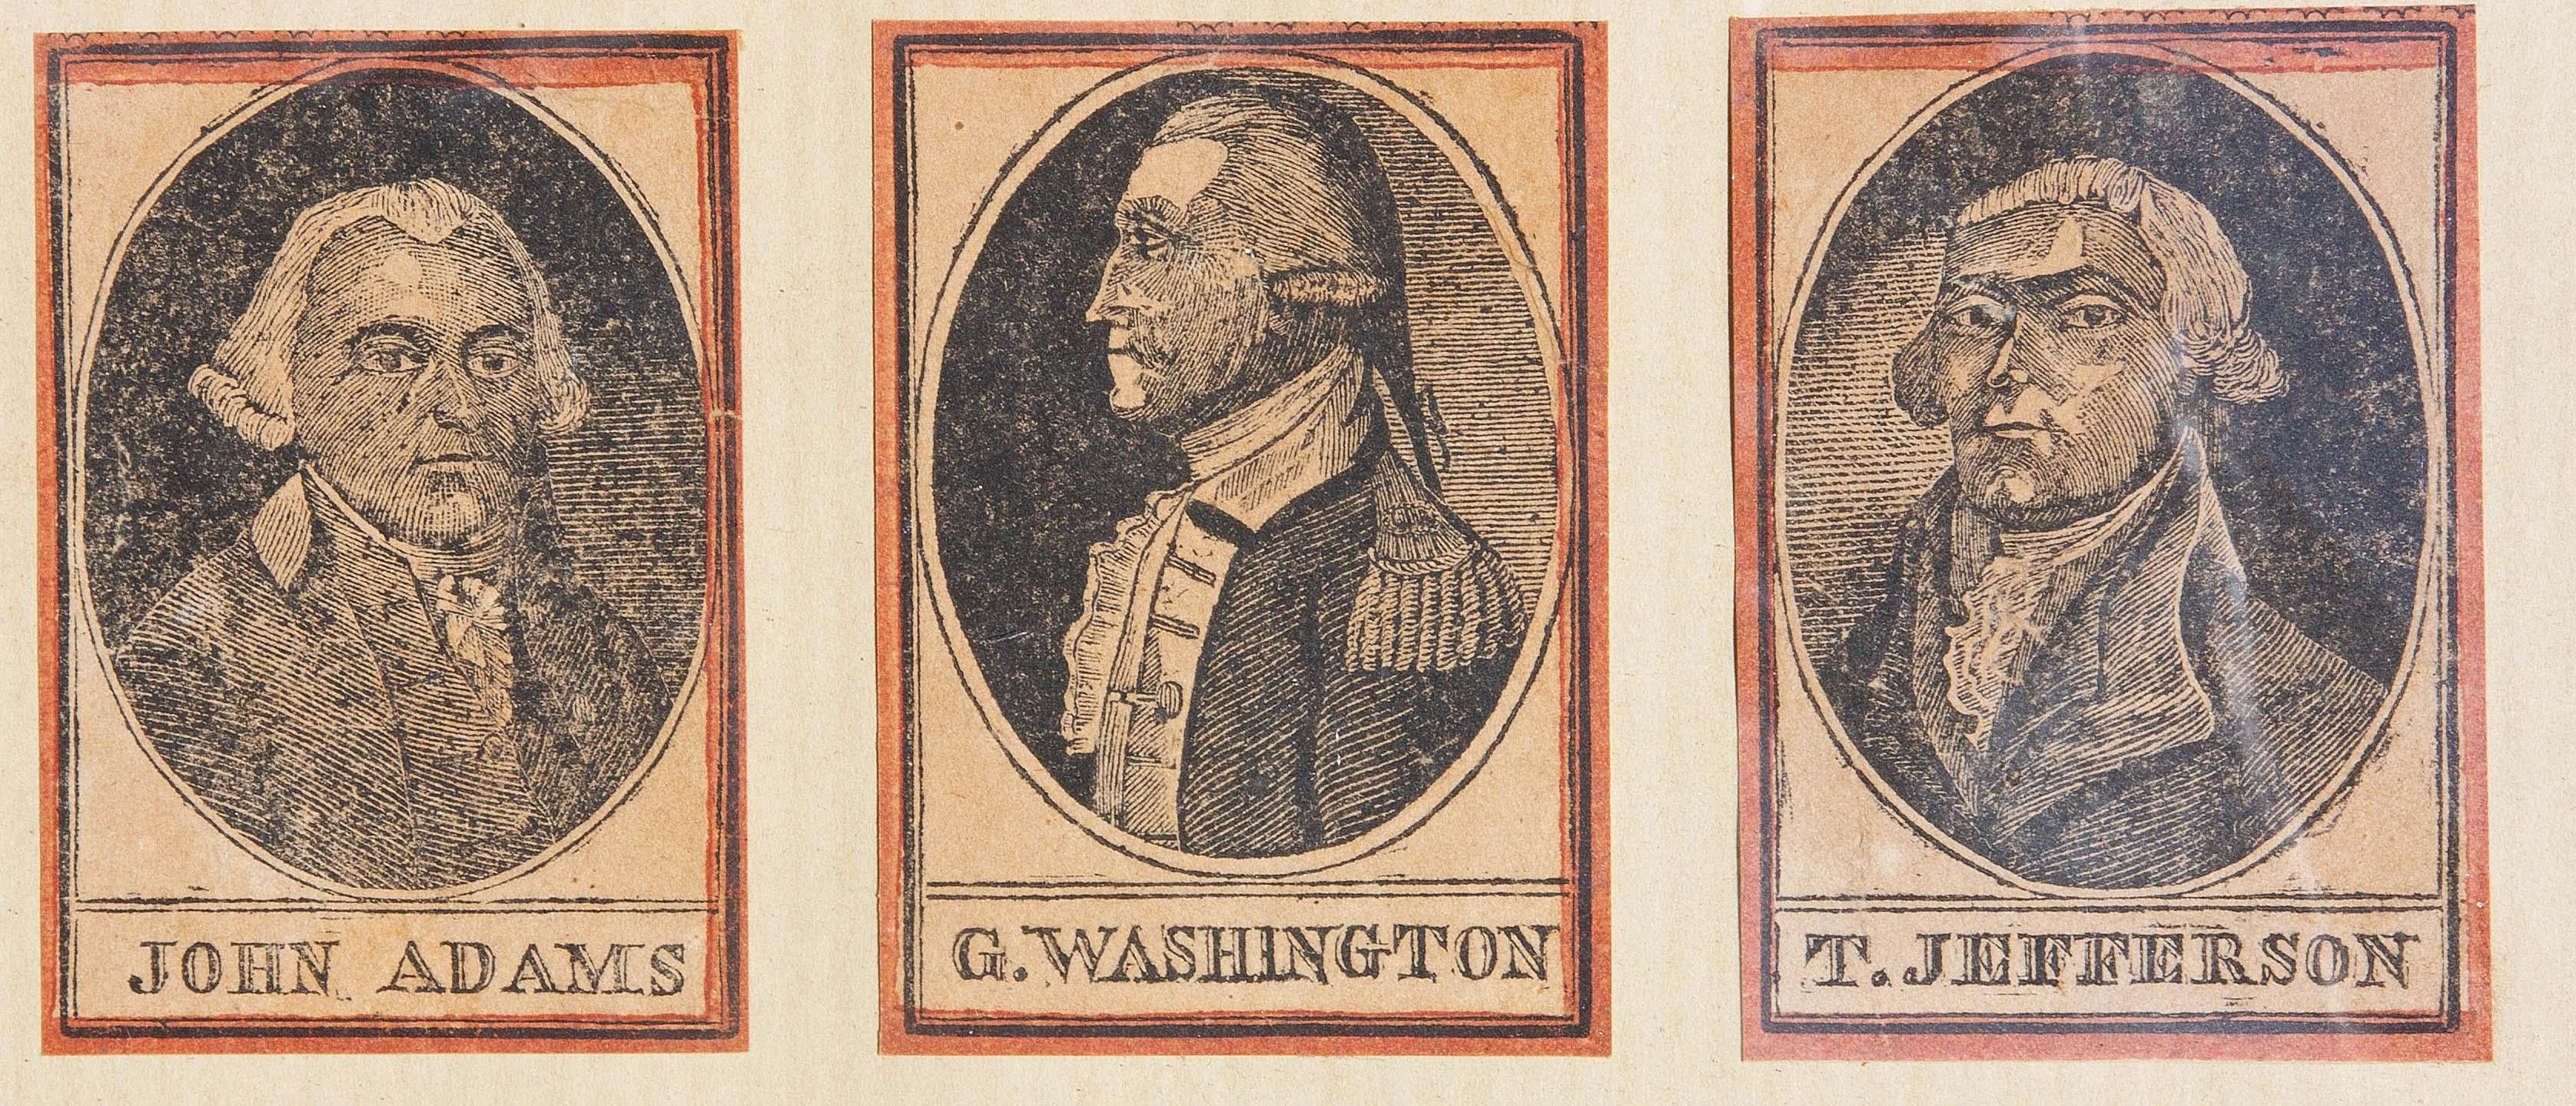 Porträtstiche des 18. Jahrhunderts von George Washington Thomas Jefferson  – Print von Unknown